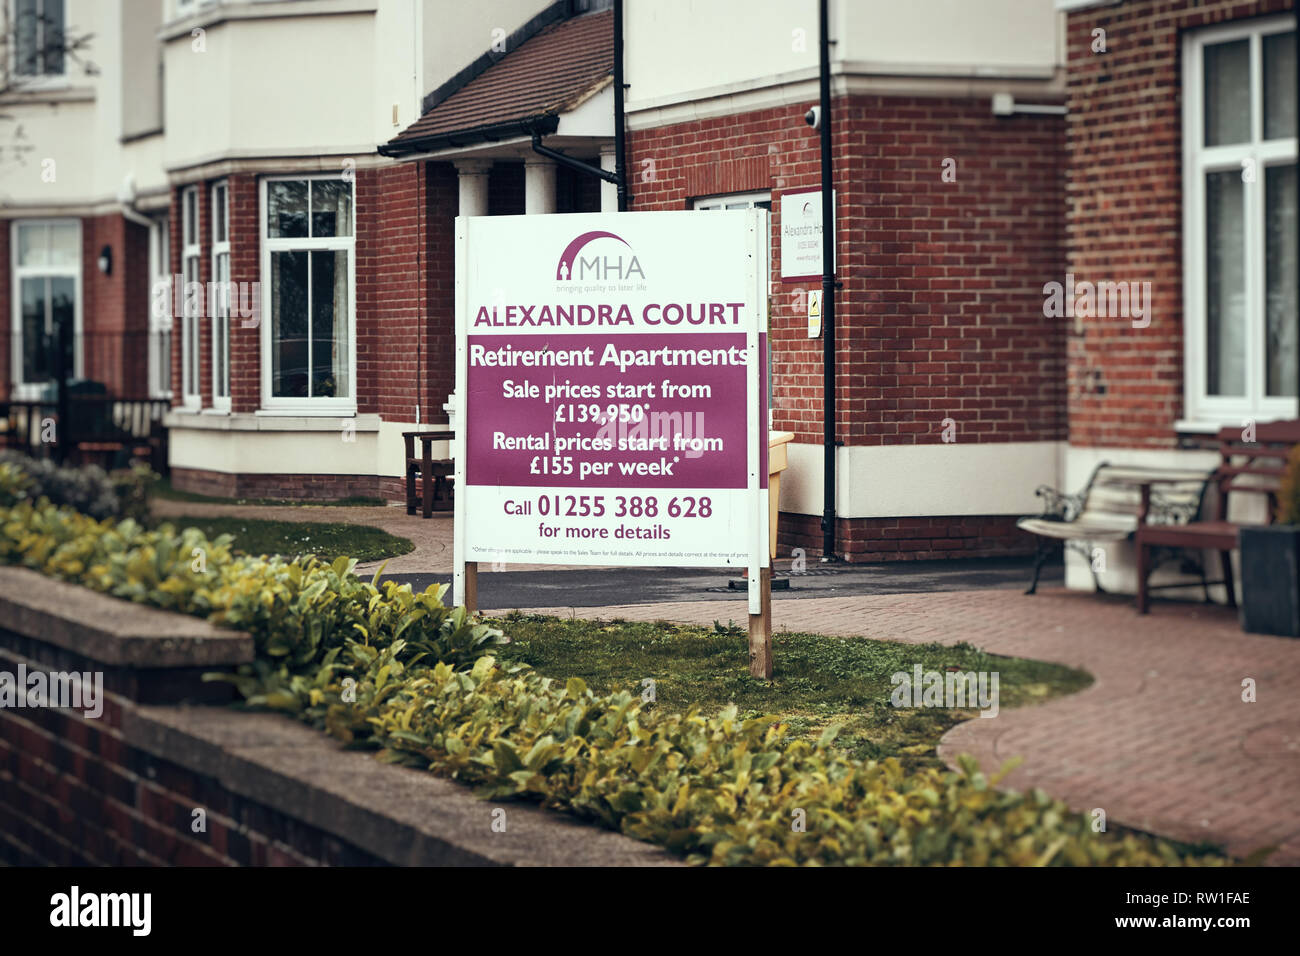 Harwich & Dovercourt, Essex, England - 3. März 2019: Äußere eines Care Home in Harwich mit einer Werbetafel für den Ruhestand Apartments mit pric Stockfoto